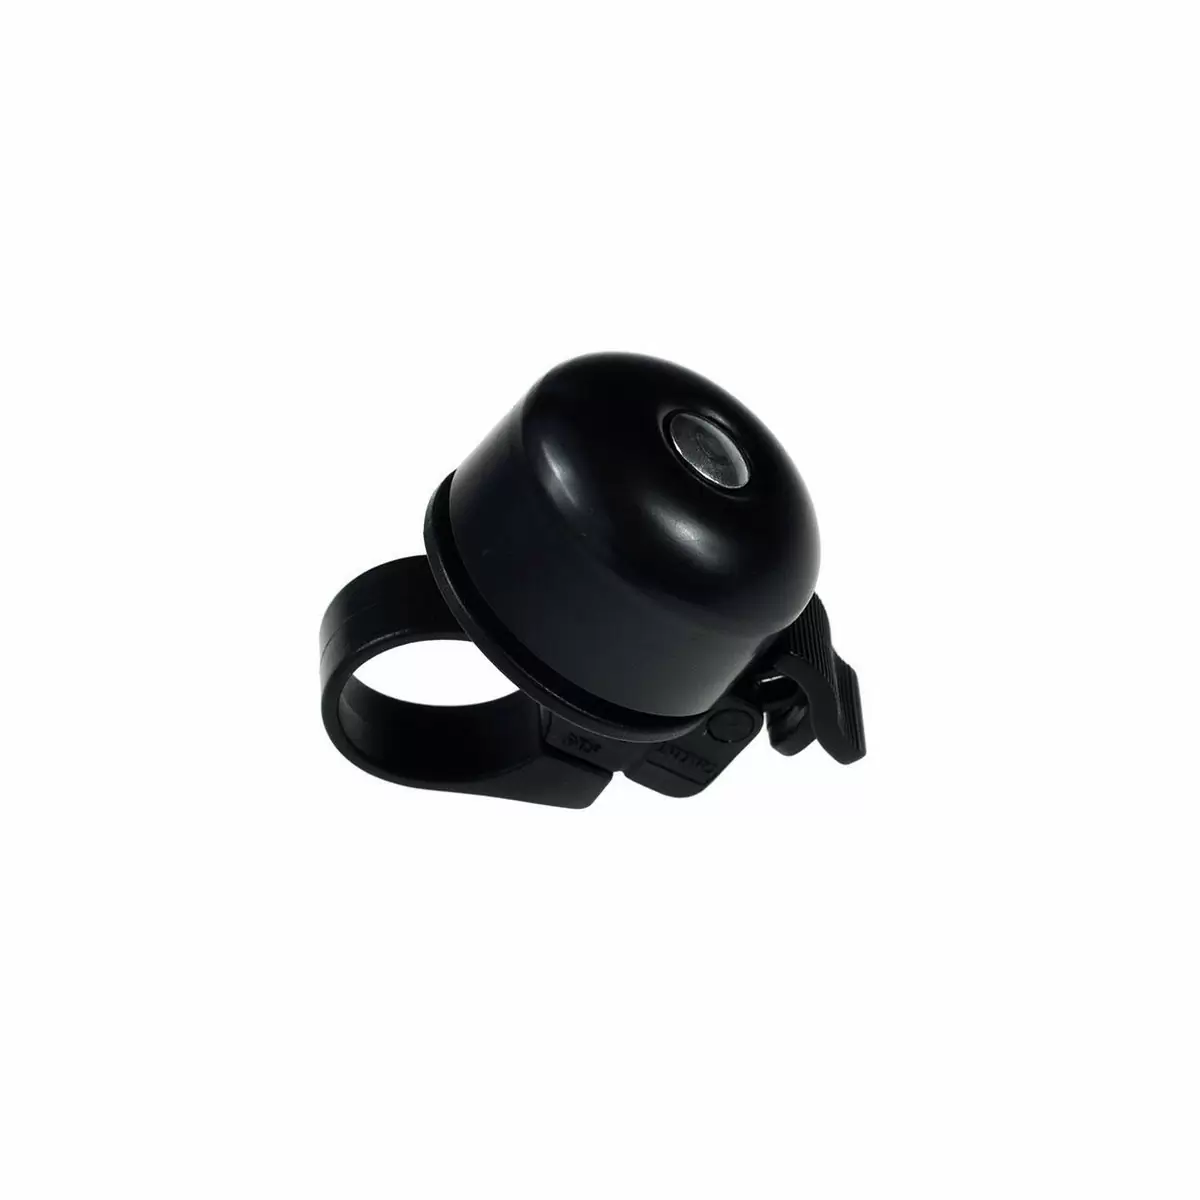 campanello mini bell nero - image